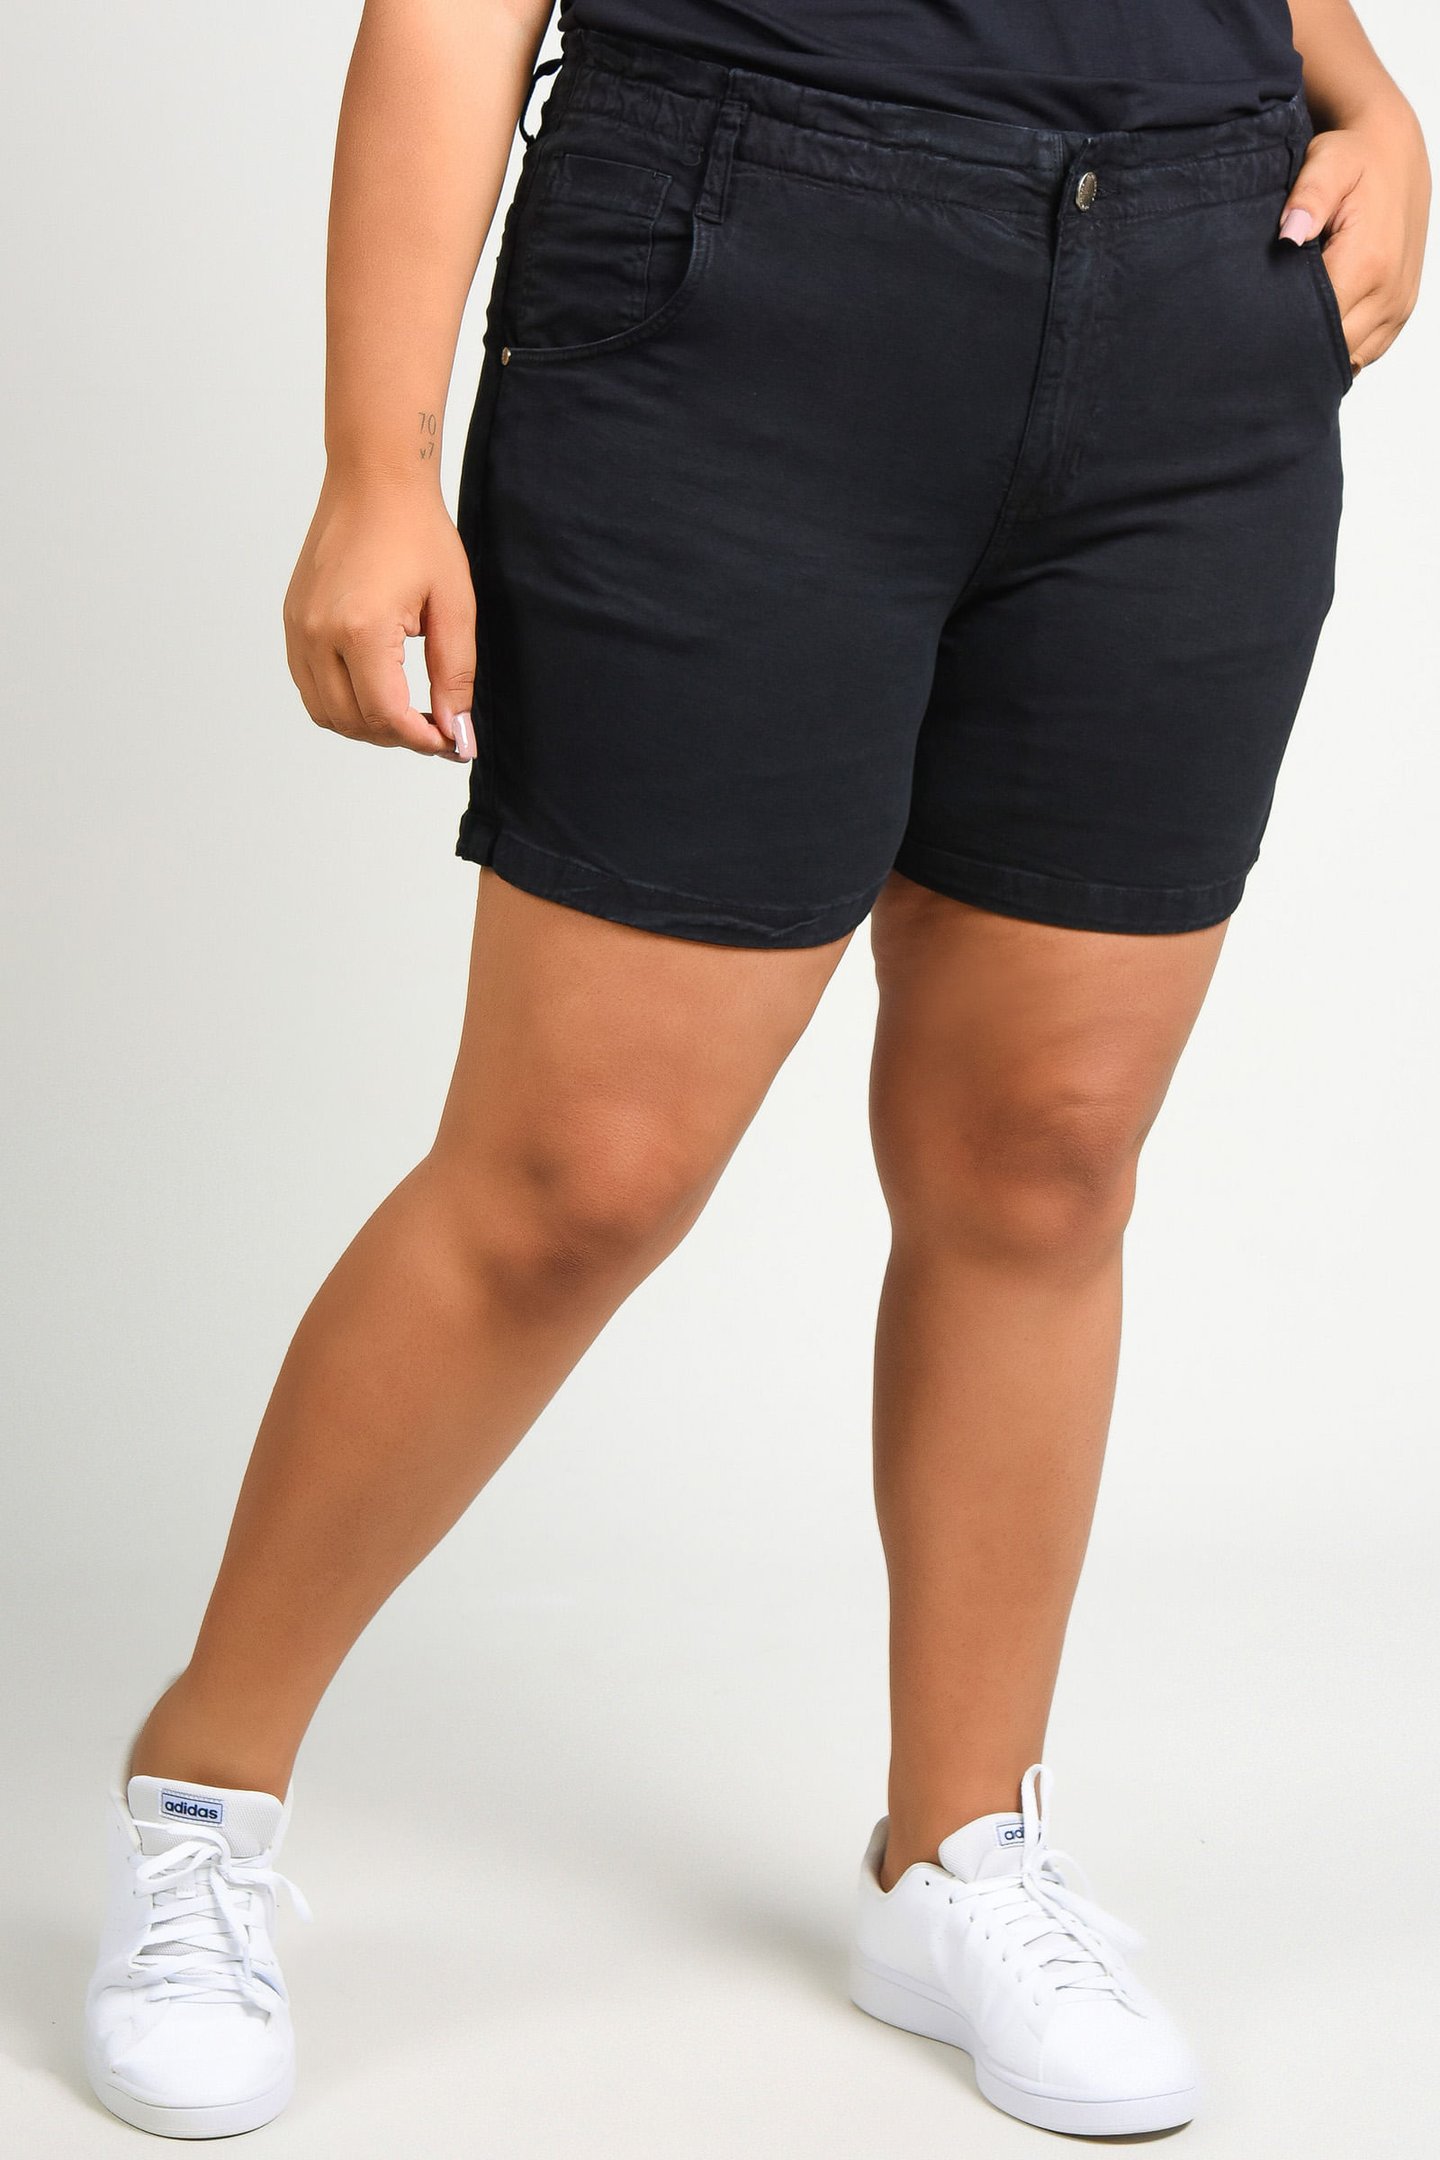 Shorts de sarja com elastano plus size preto